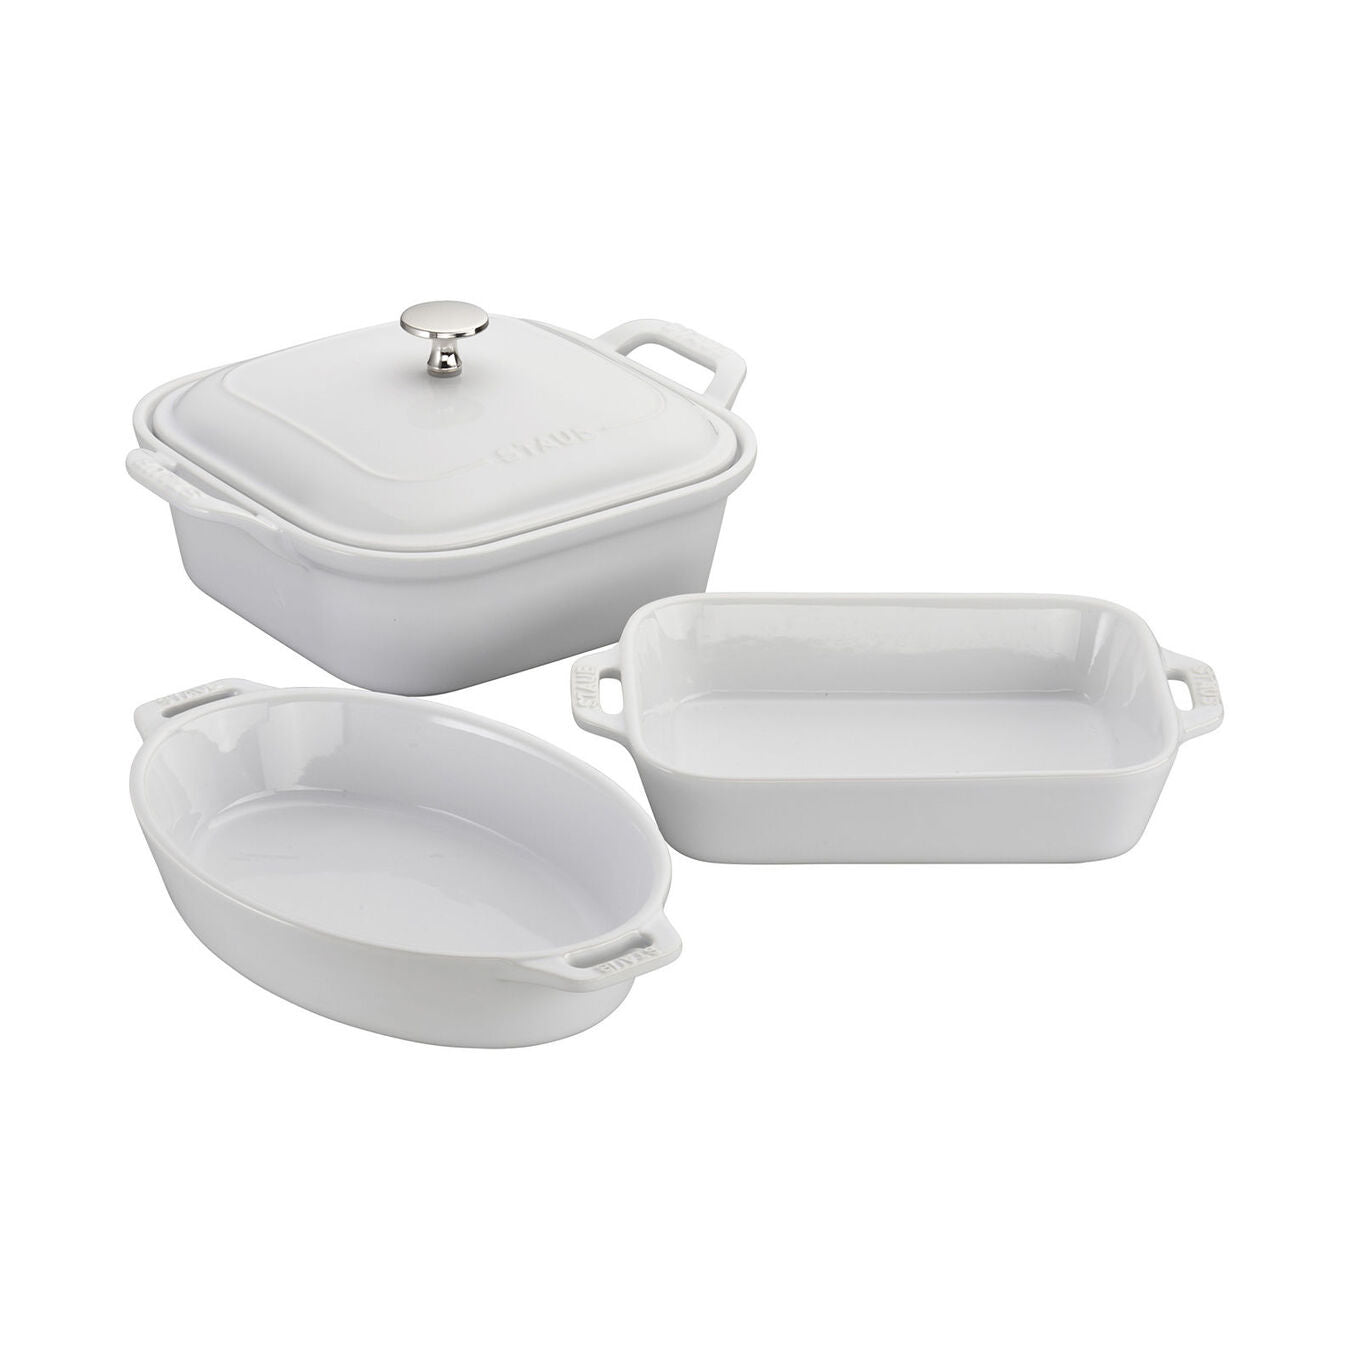 Ceramic 4-Piece Baking Dish Set - White